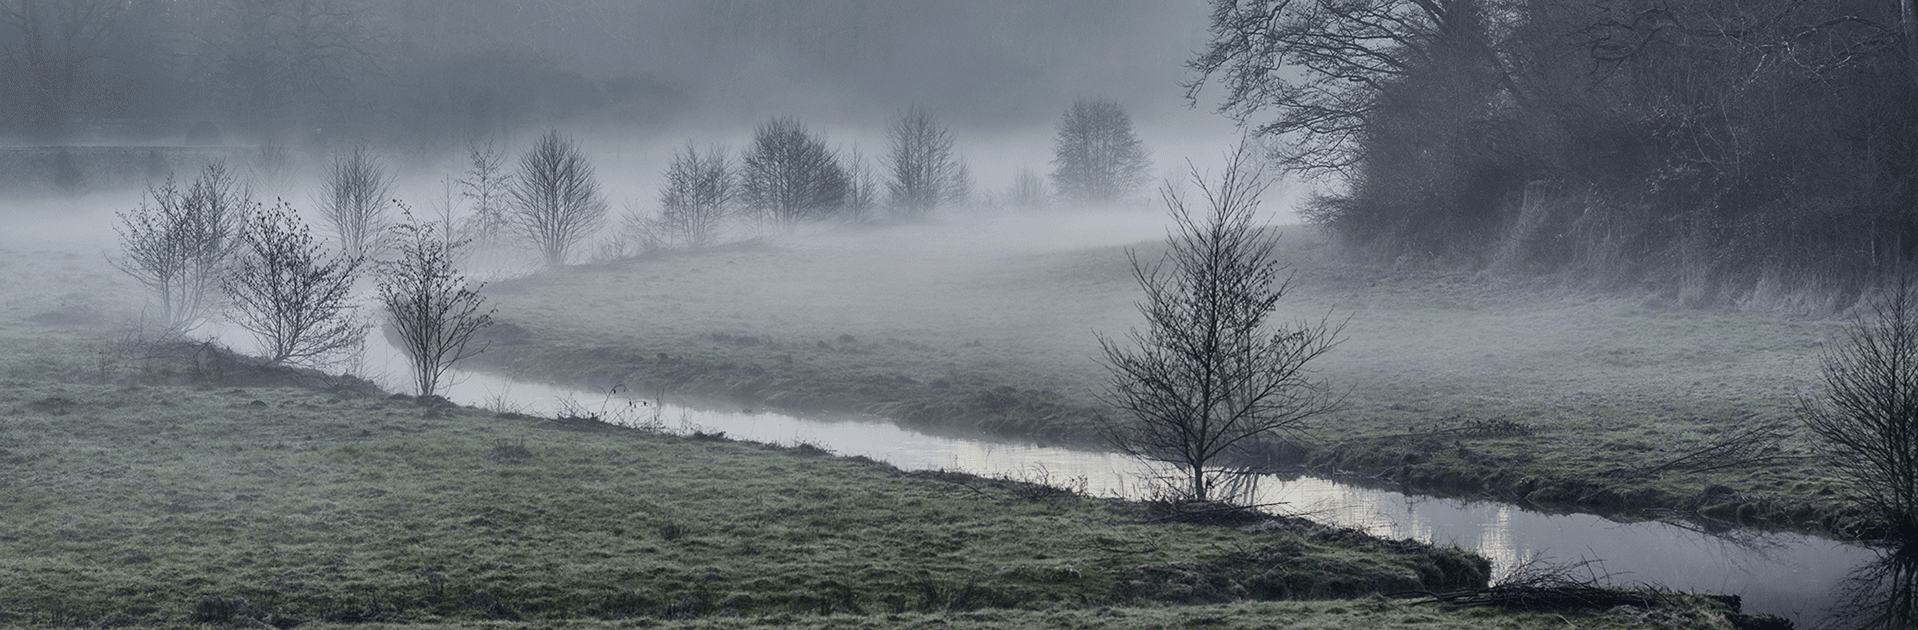 Frazé et la brume dans le parc du château © Didier Leplat - 2016